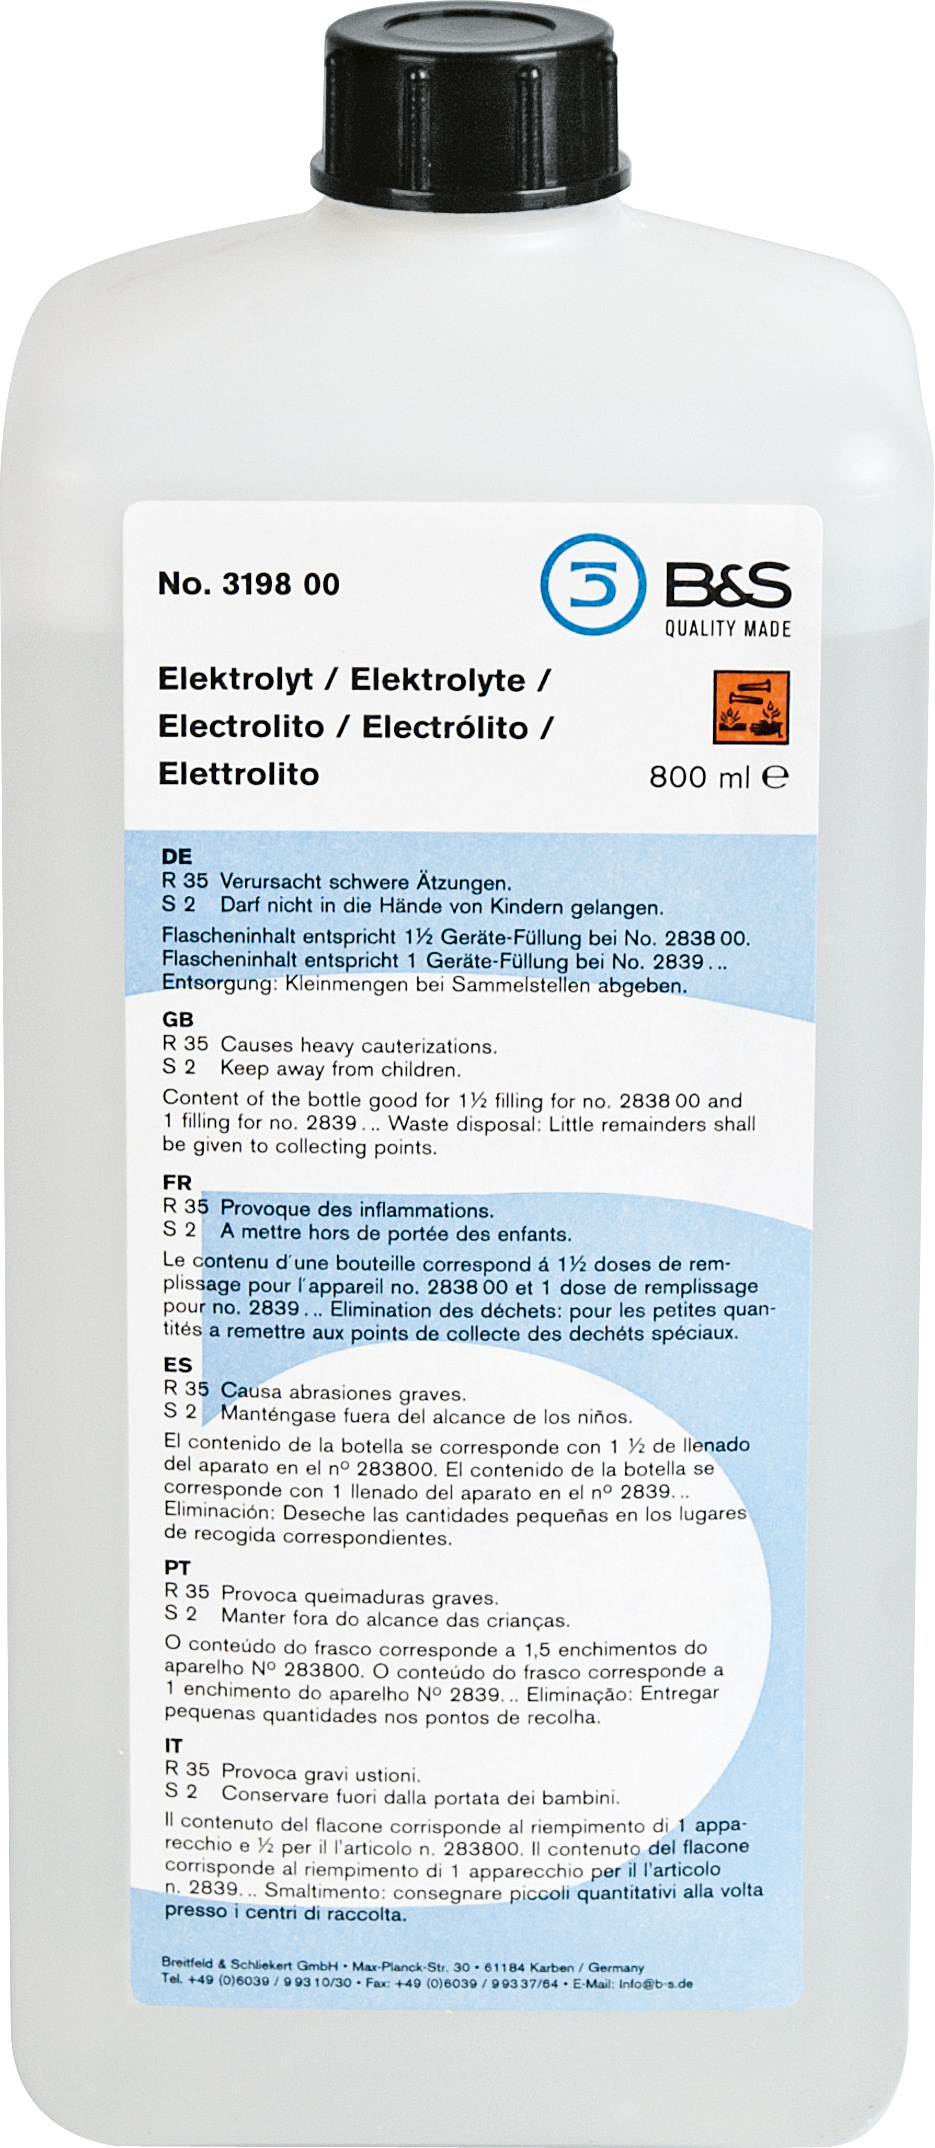 Electrolyt